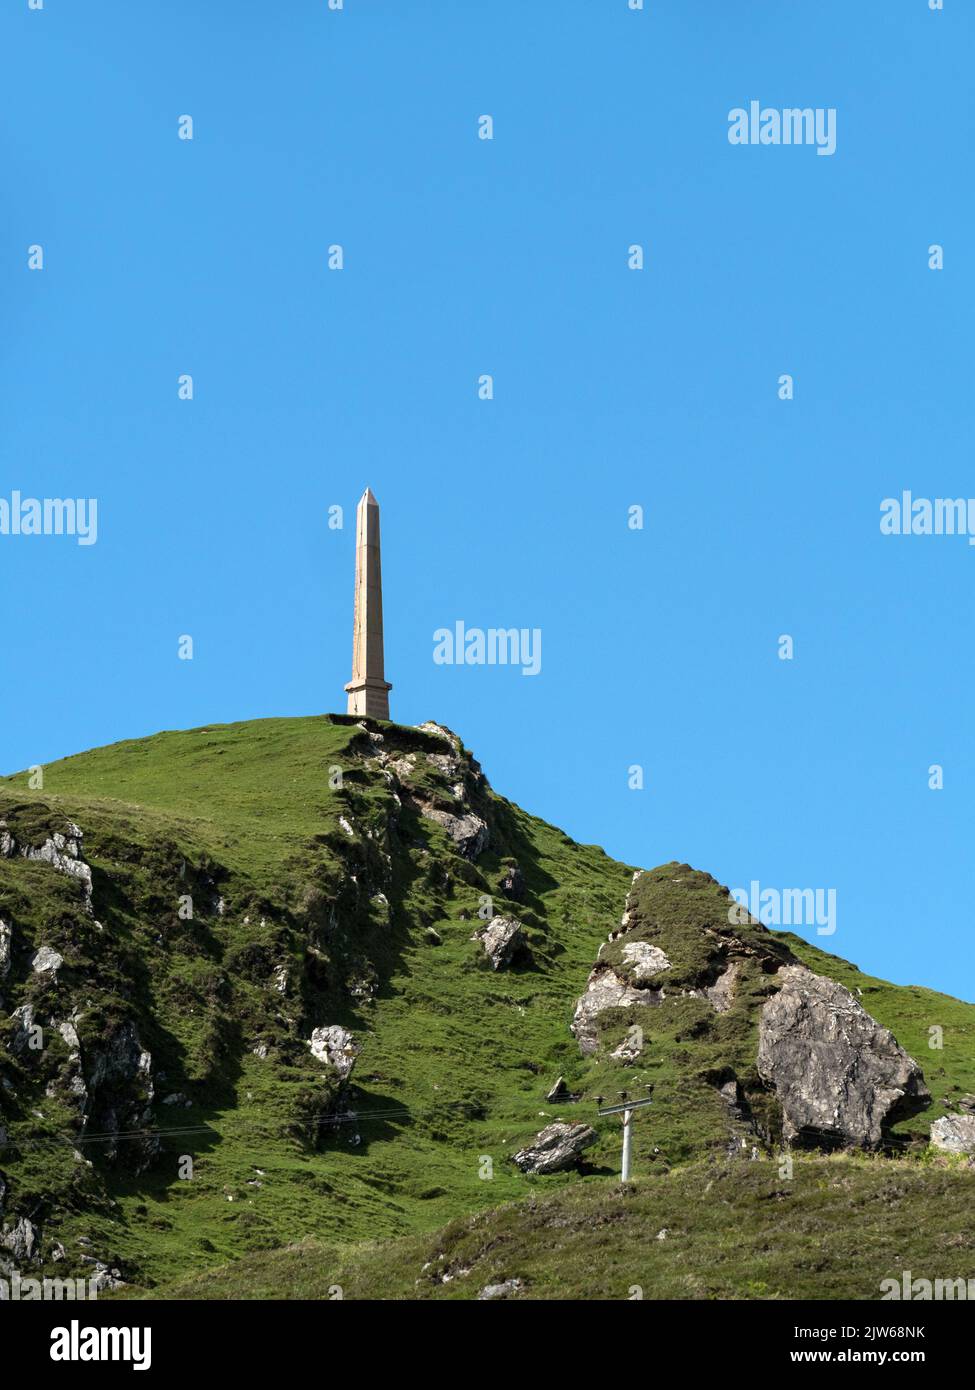 L'obélisque du Monument Lord Colonsay Duncan MacNeill se trouve au sommet d'une colline de premier plan sur l'île Hebridean de Colonsay, en Écosse, au Royaume-Uni Banque D'Images